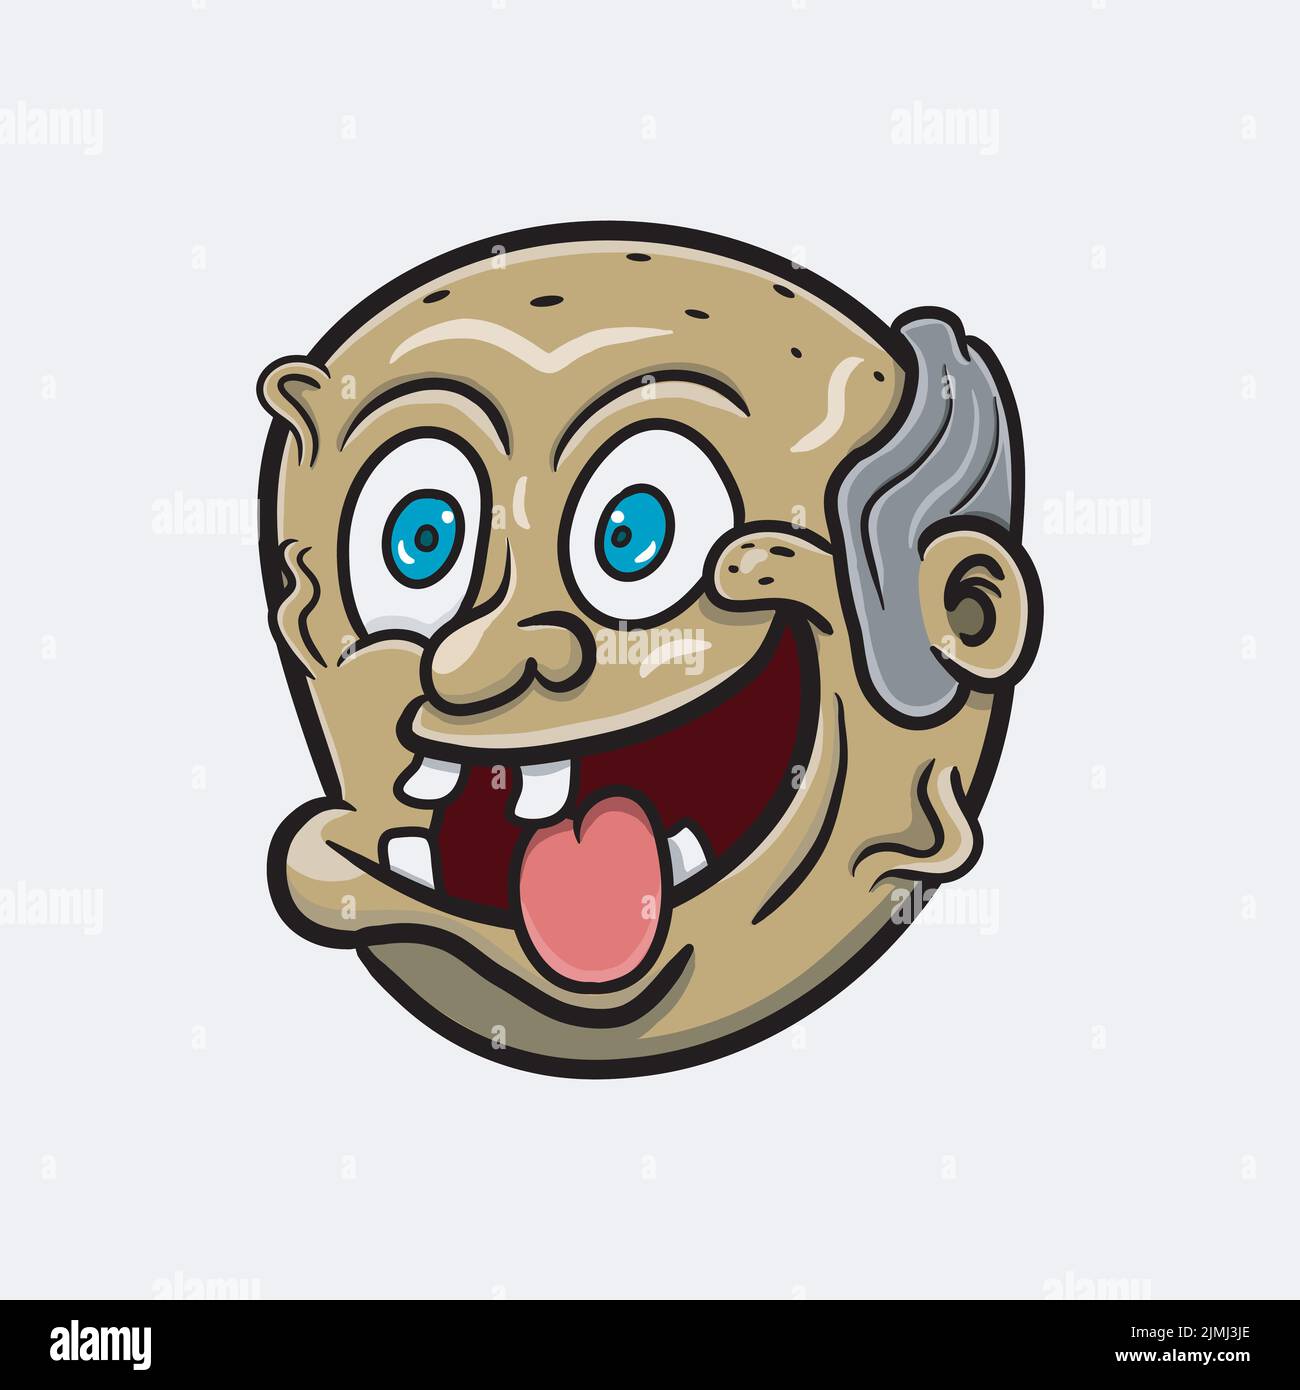 Ein Vektor-Illustration Maskottchen Cartoon-Figur eines lustigen alten Mannes mit kahlen Kopf und Lachen Ausdruck Stock Vektor